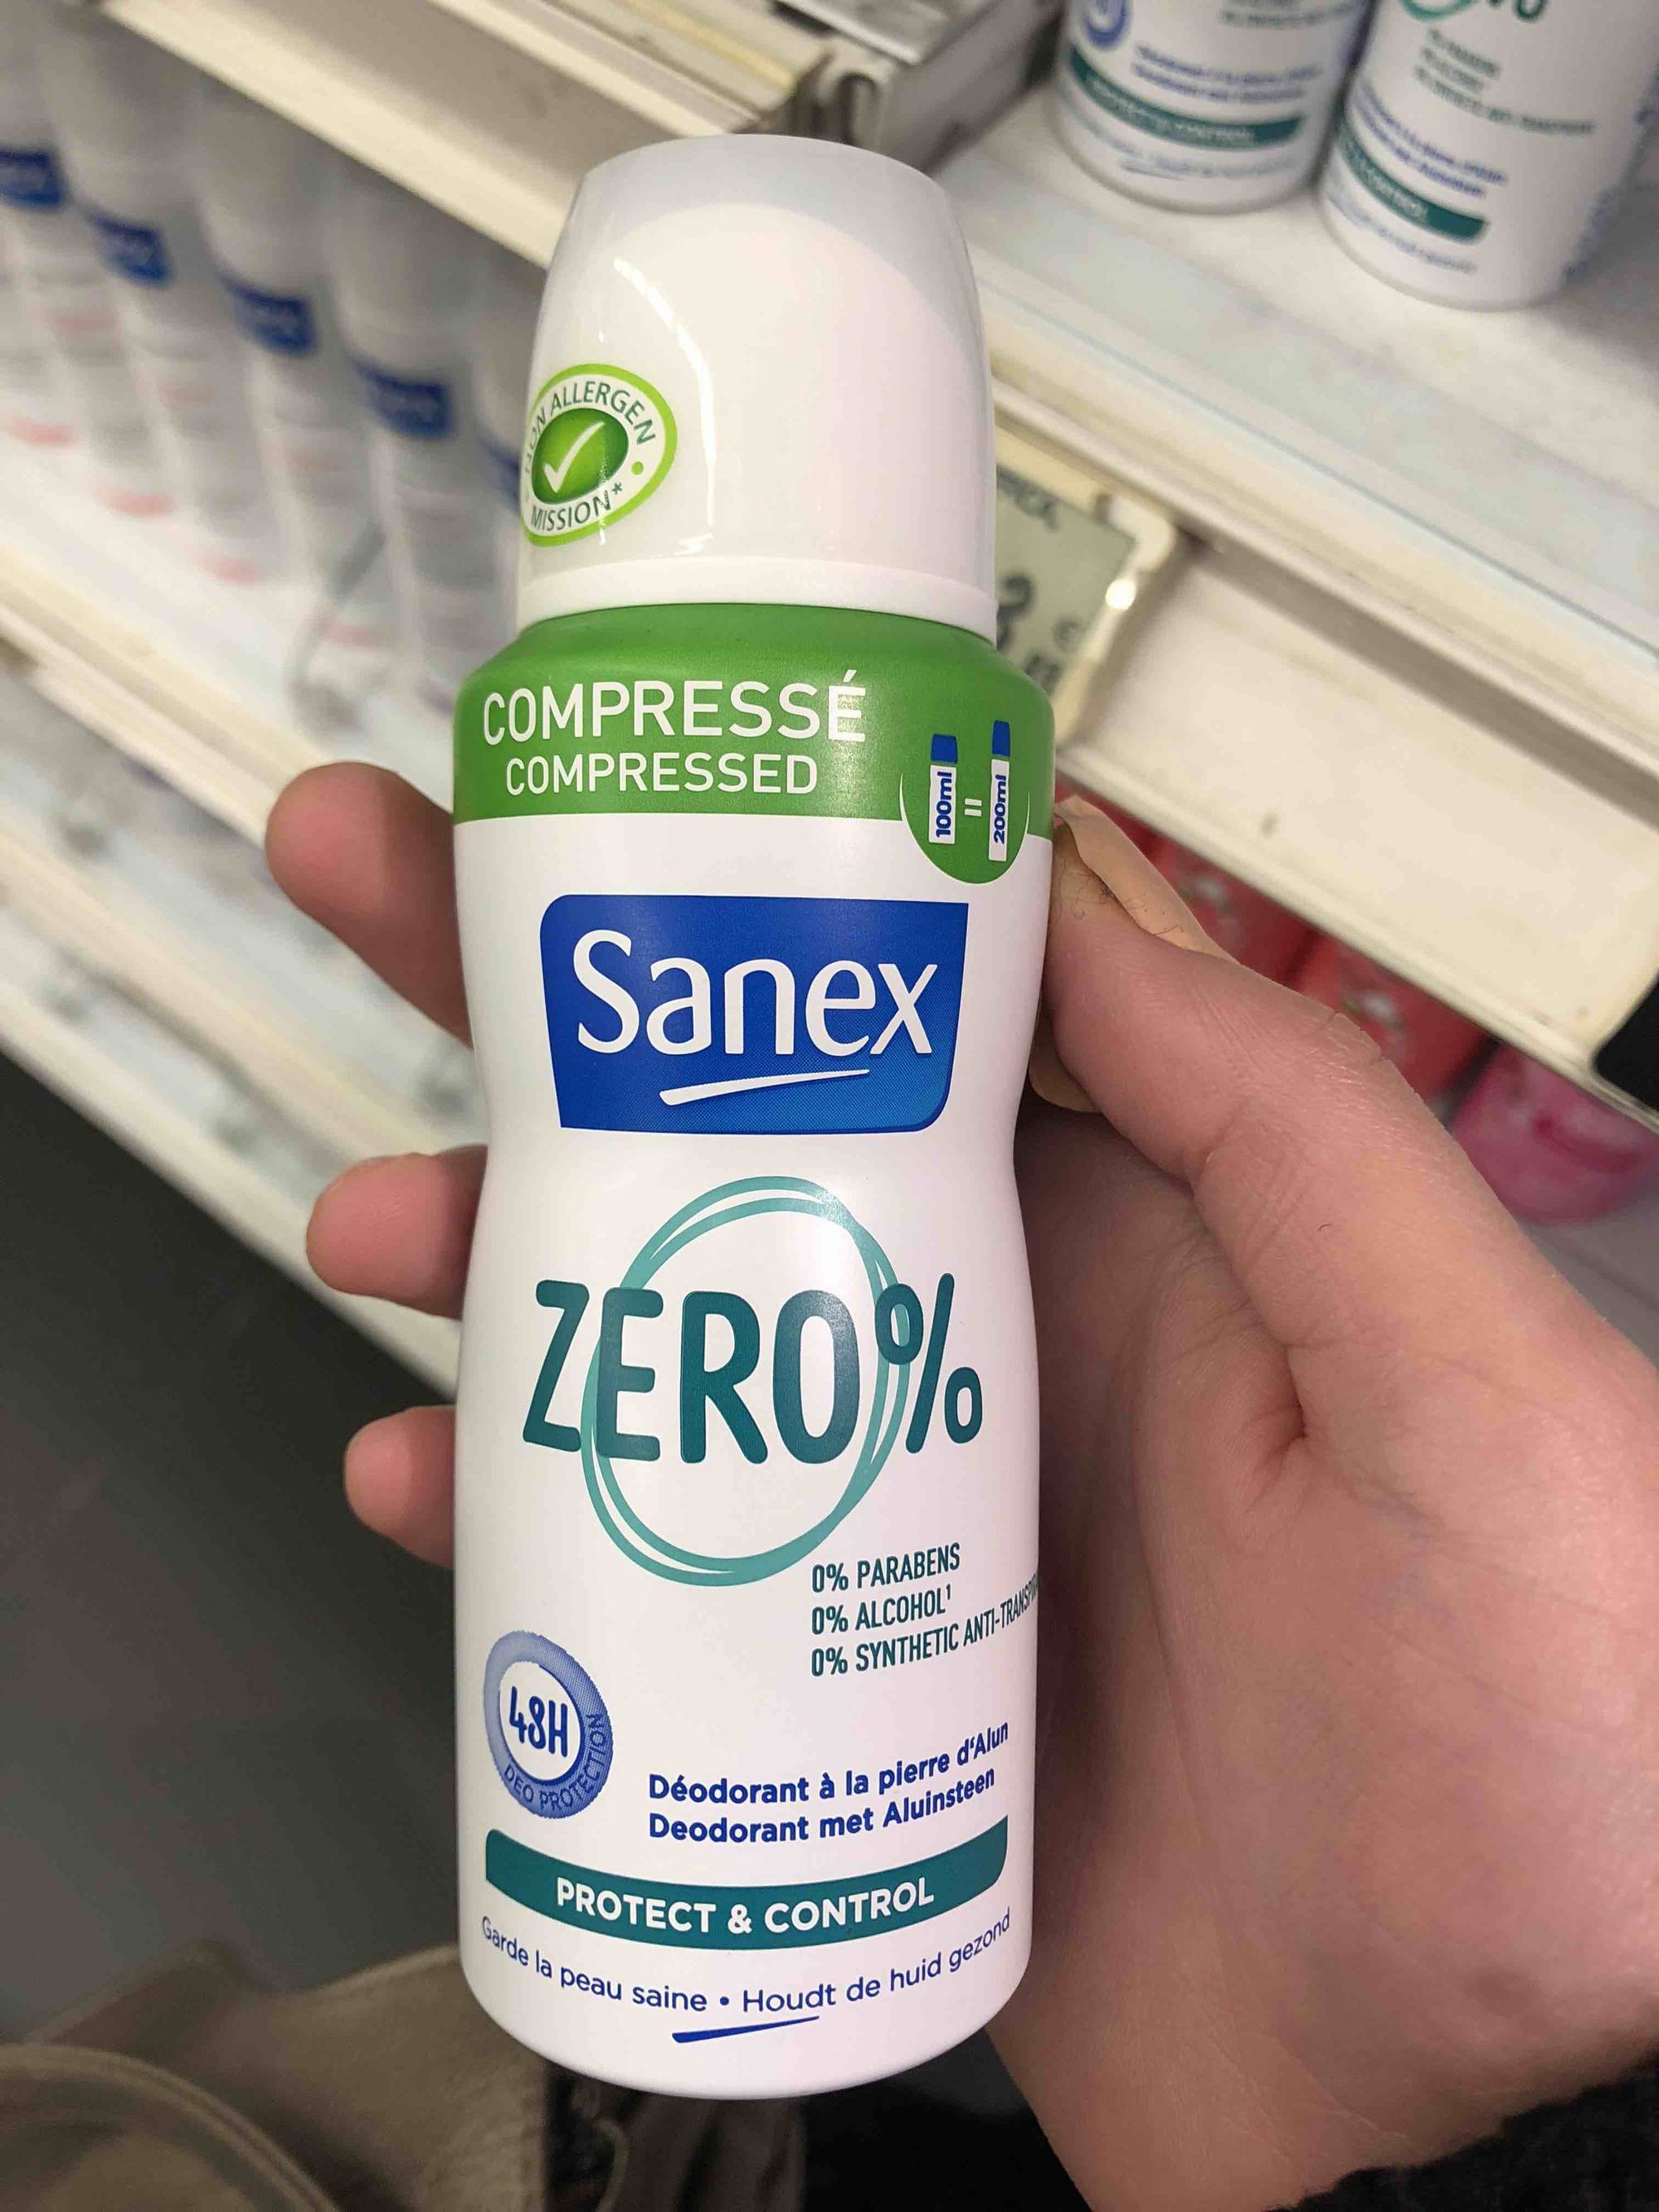 SANEX - Zero% Déodorant compressé à la pierre d'alun